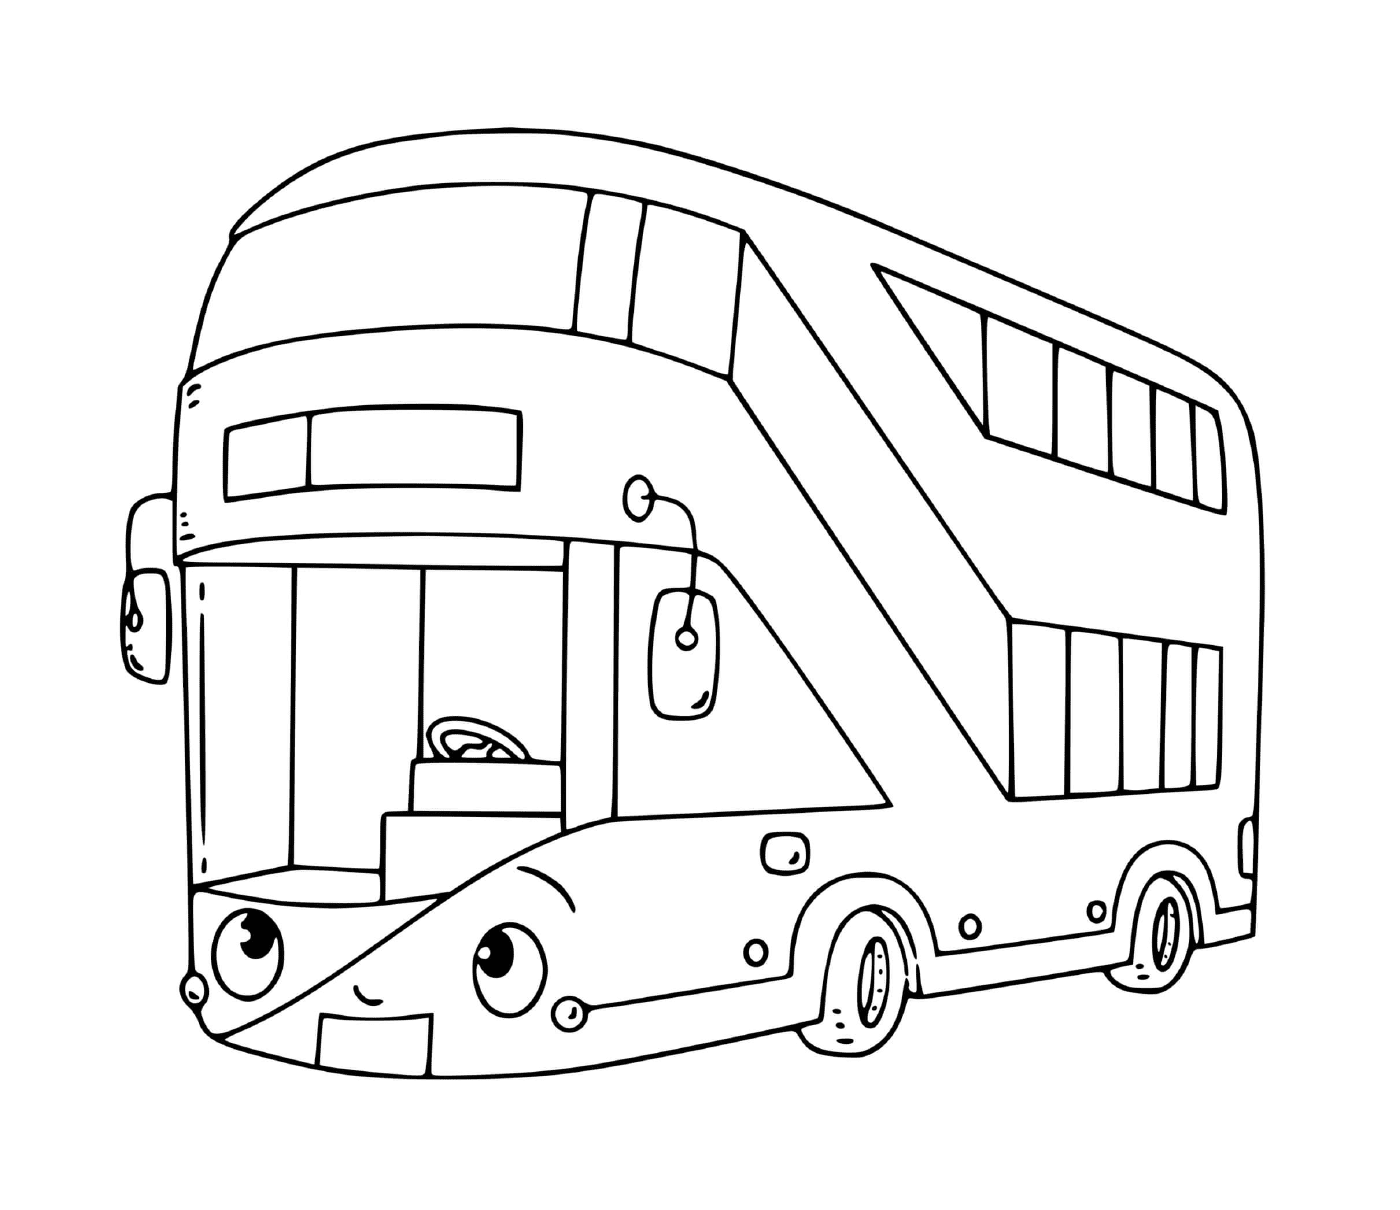  Un autobús de dos pisos para el transporte 